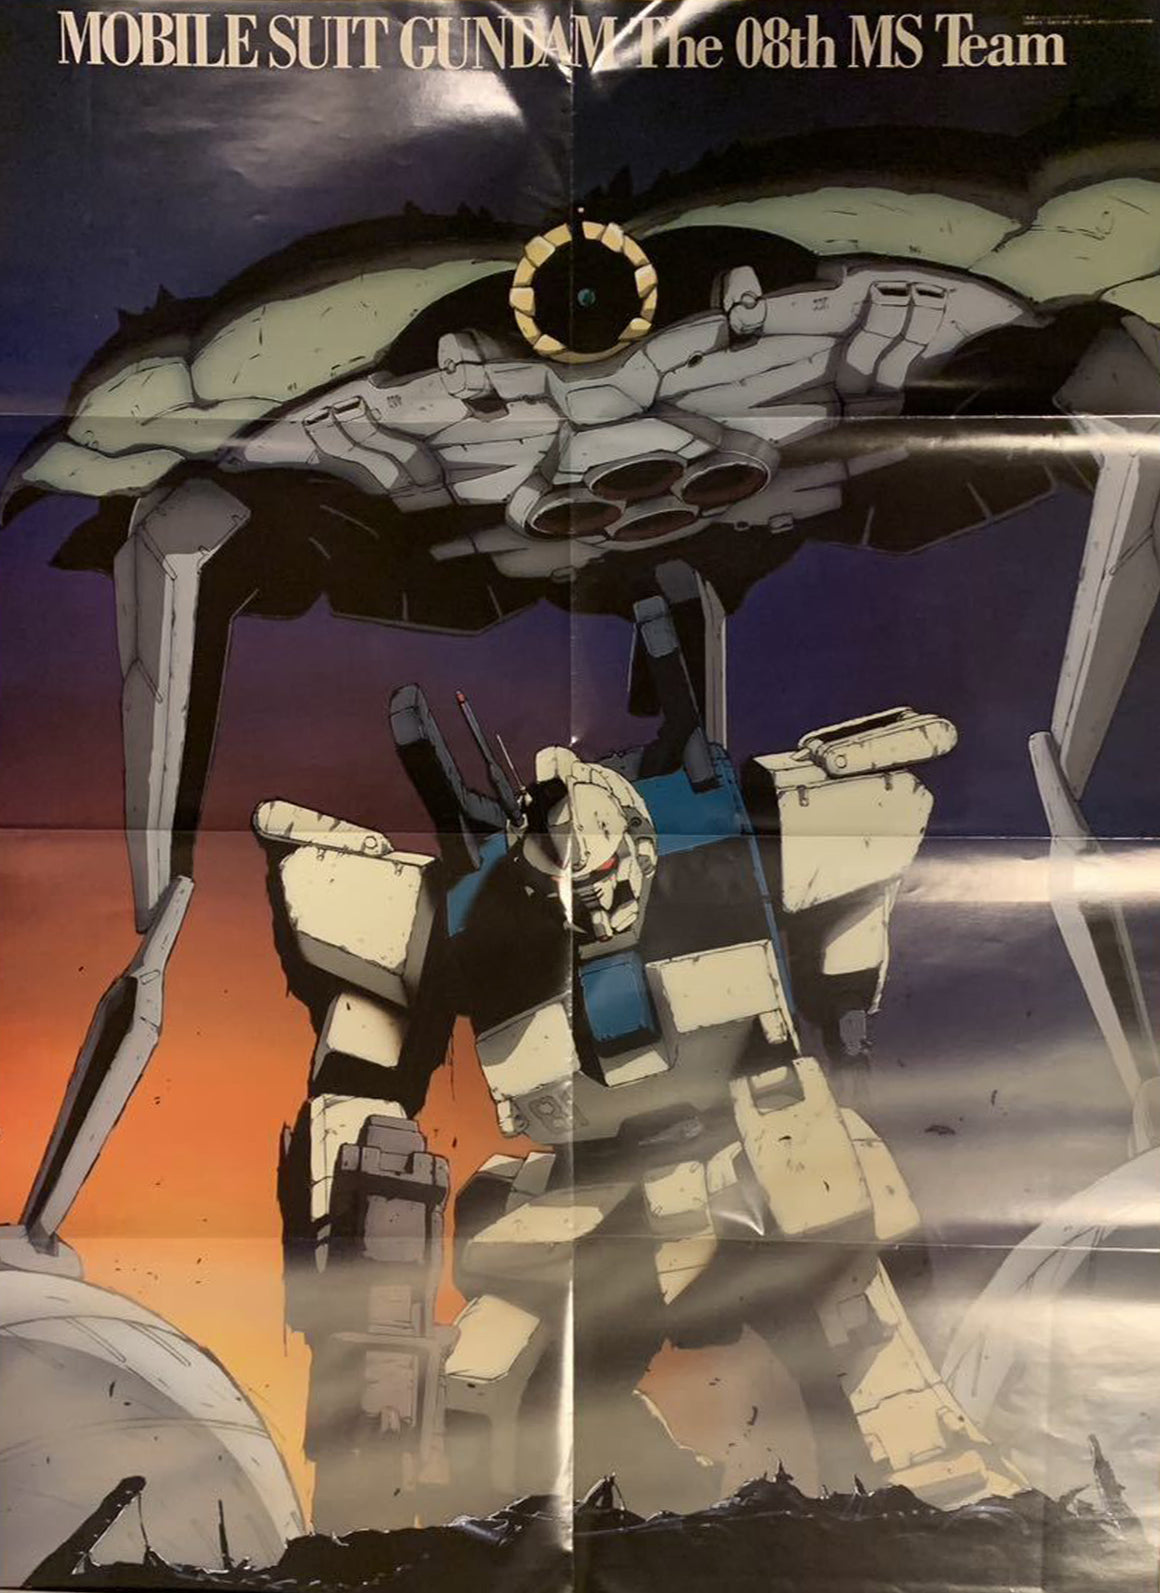 Mobile Suit Gundam The 08th MS Team - Ez-8 & Apsaras III - Hanken Cel w/ Genga & Color Refs